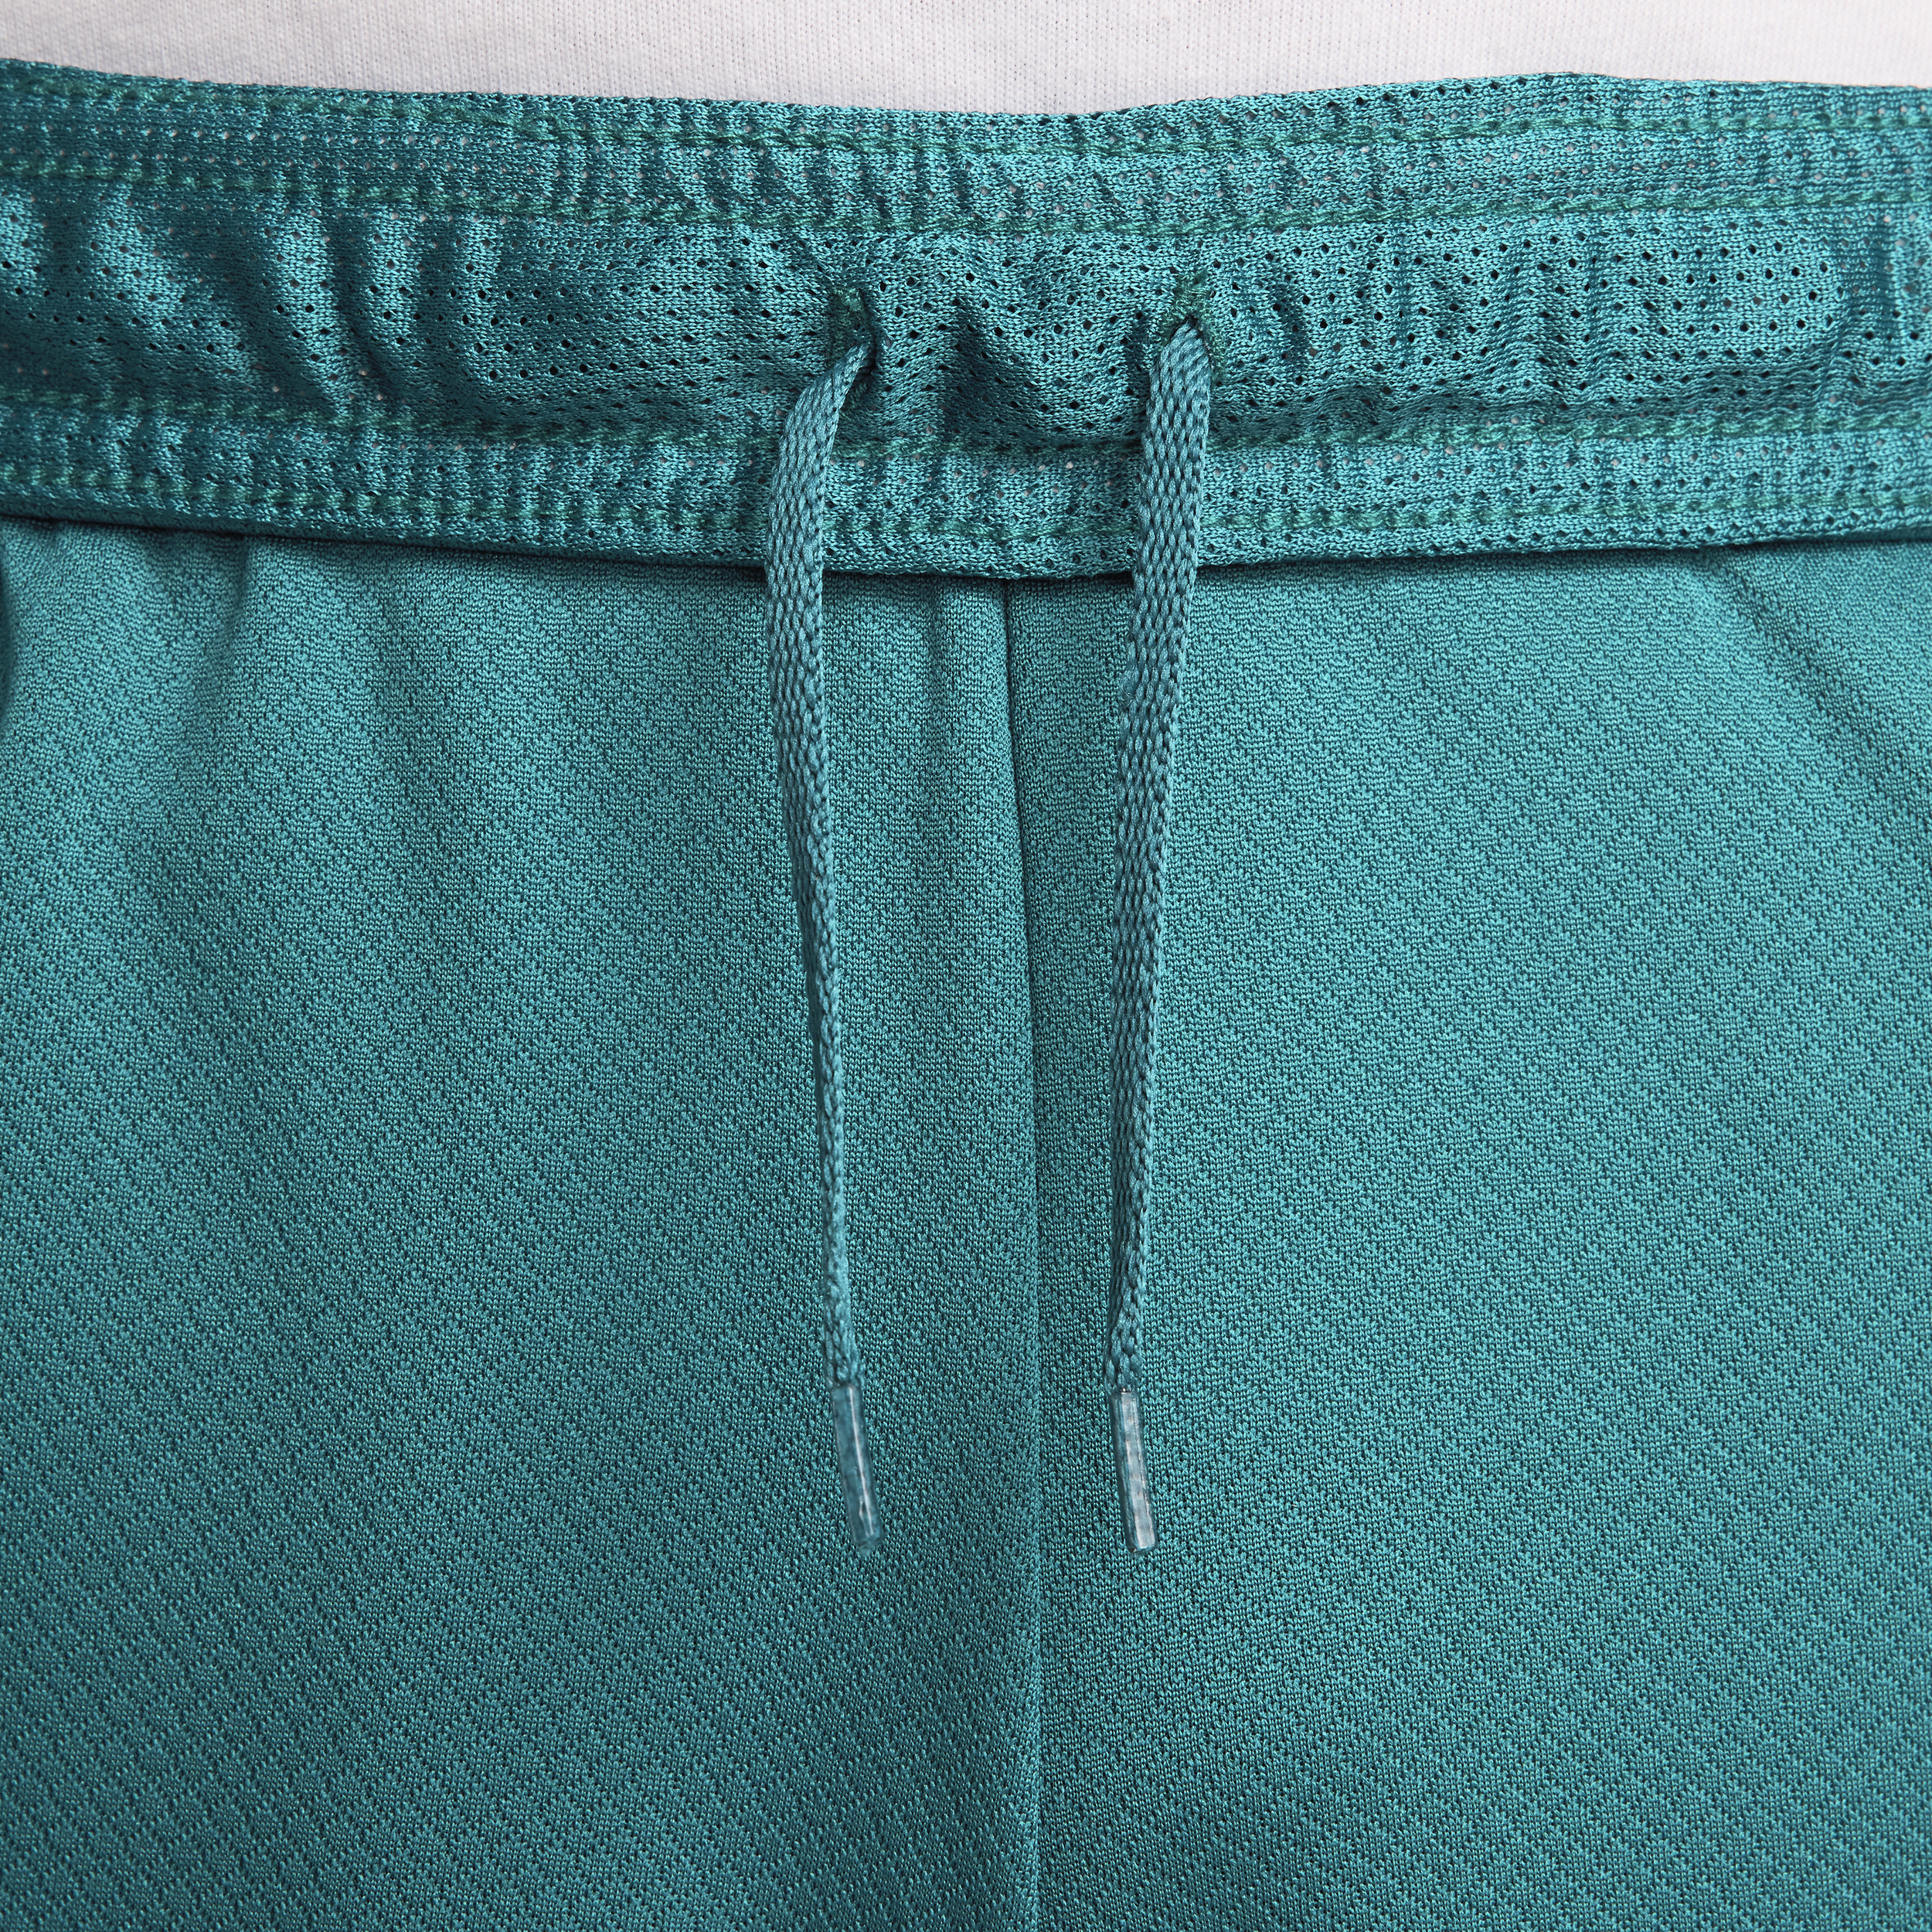 Nike Portugal Strike Dri-FIT knit voetbalshorts voor heren Groen